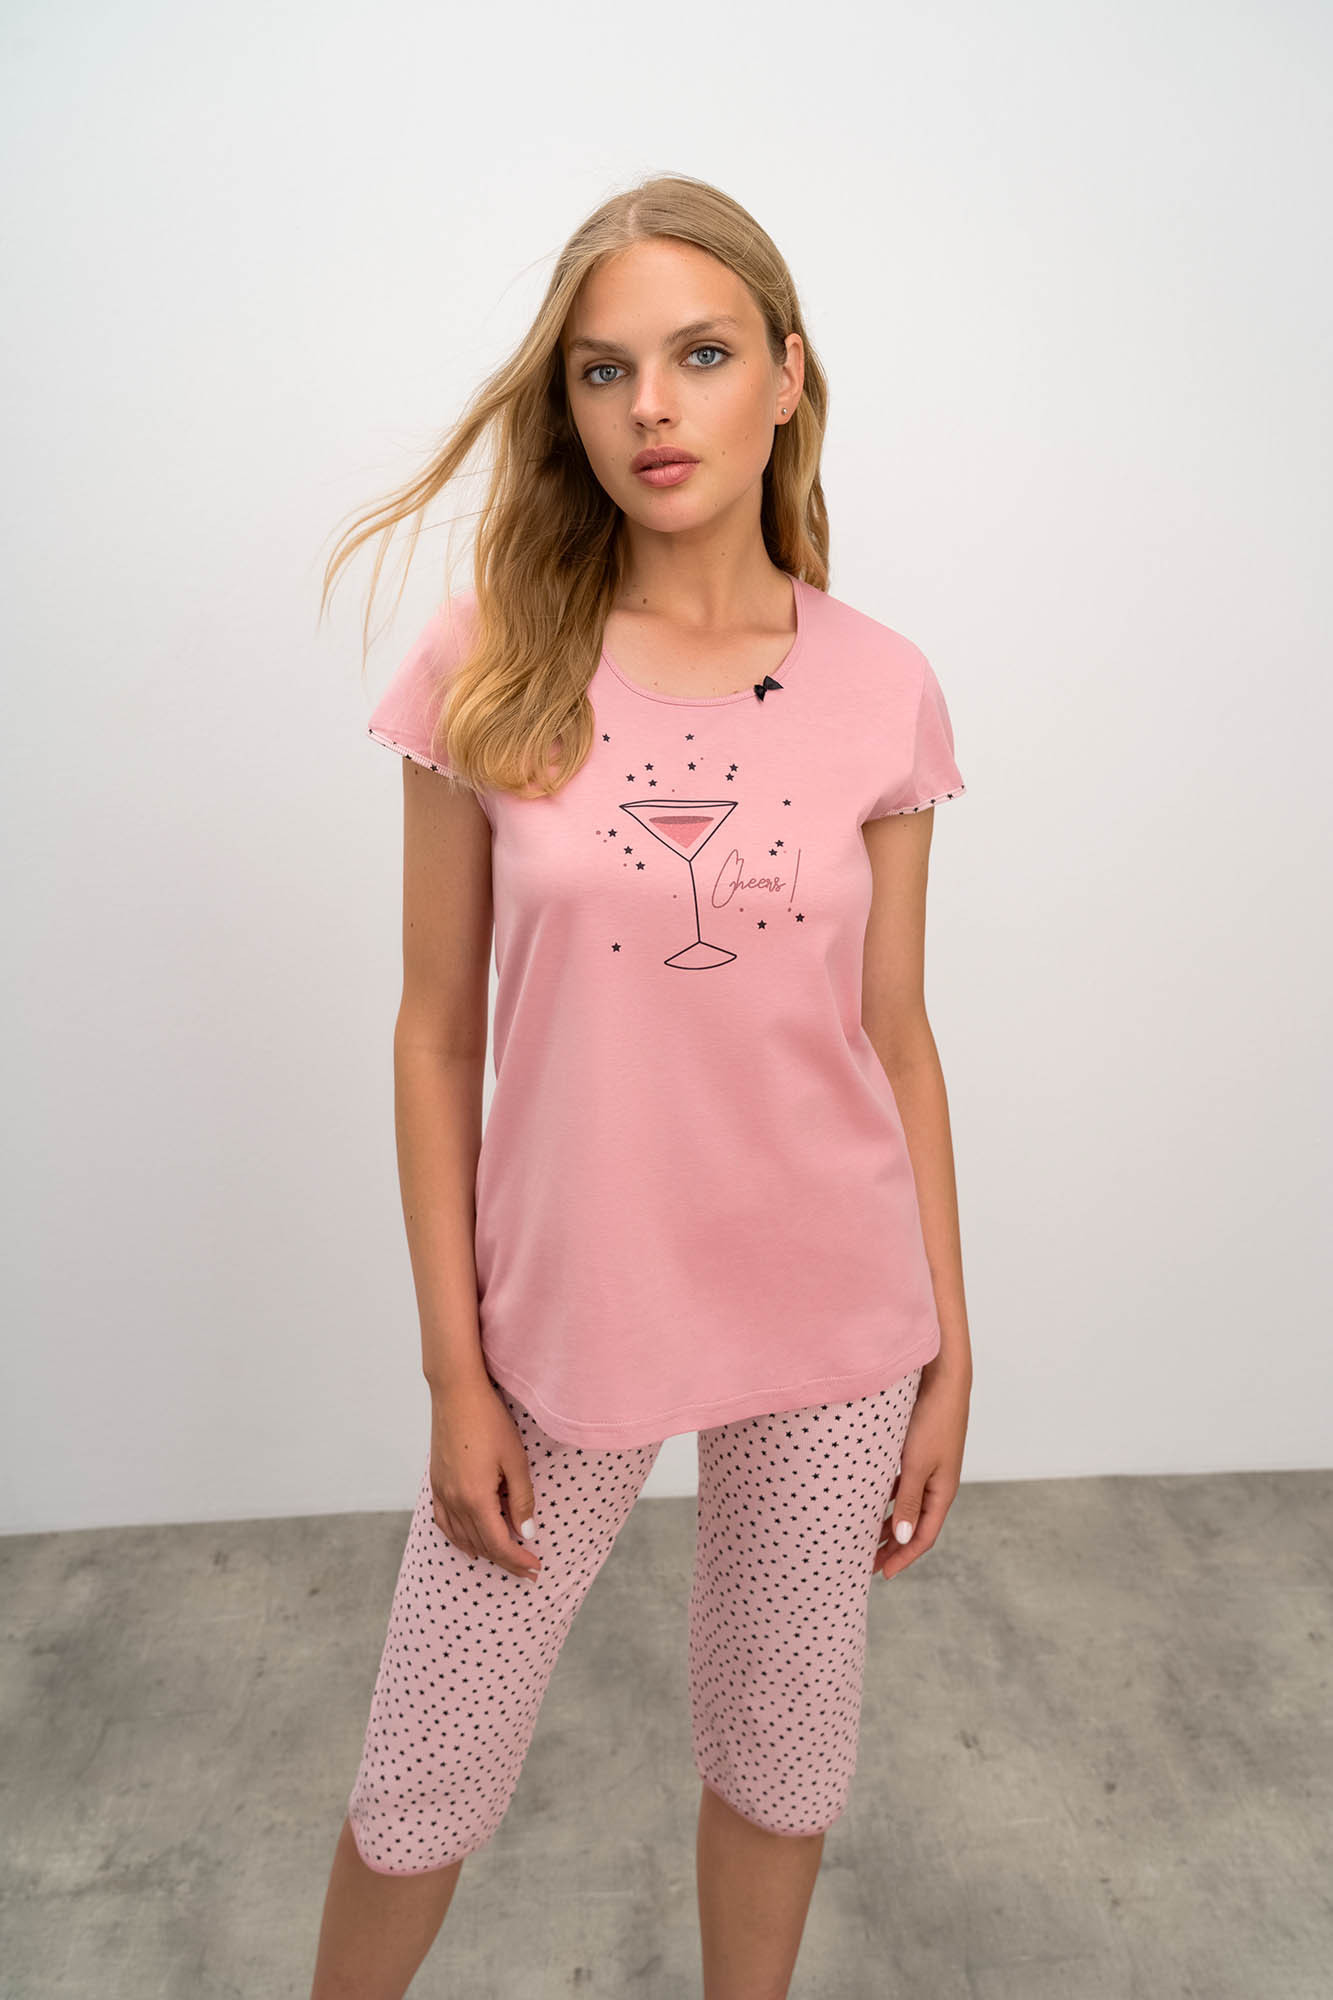 Vamp - Dvoudílné dámské pyžamo 16295 - Vamp pink gray L